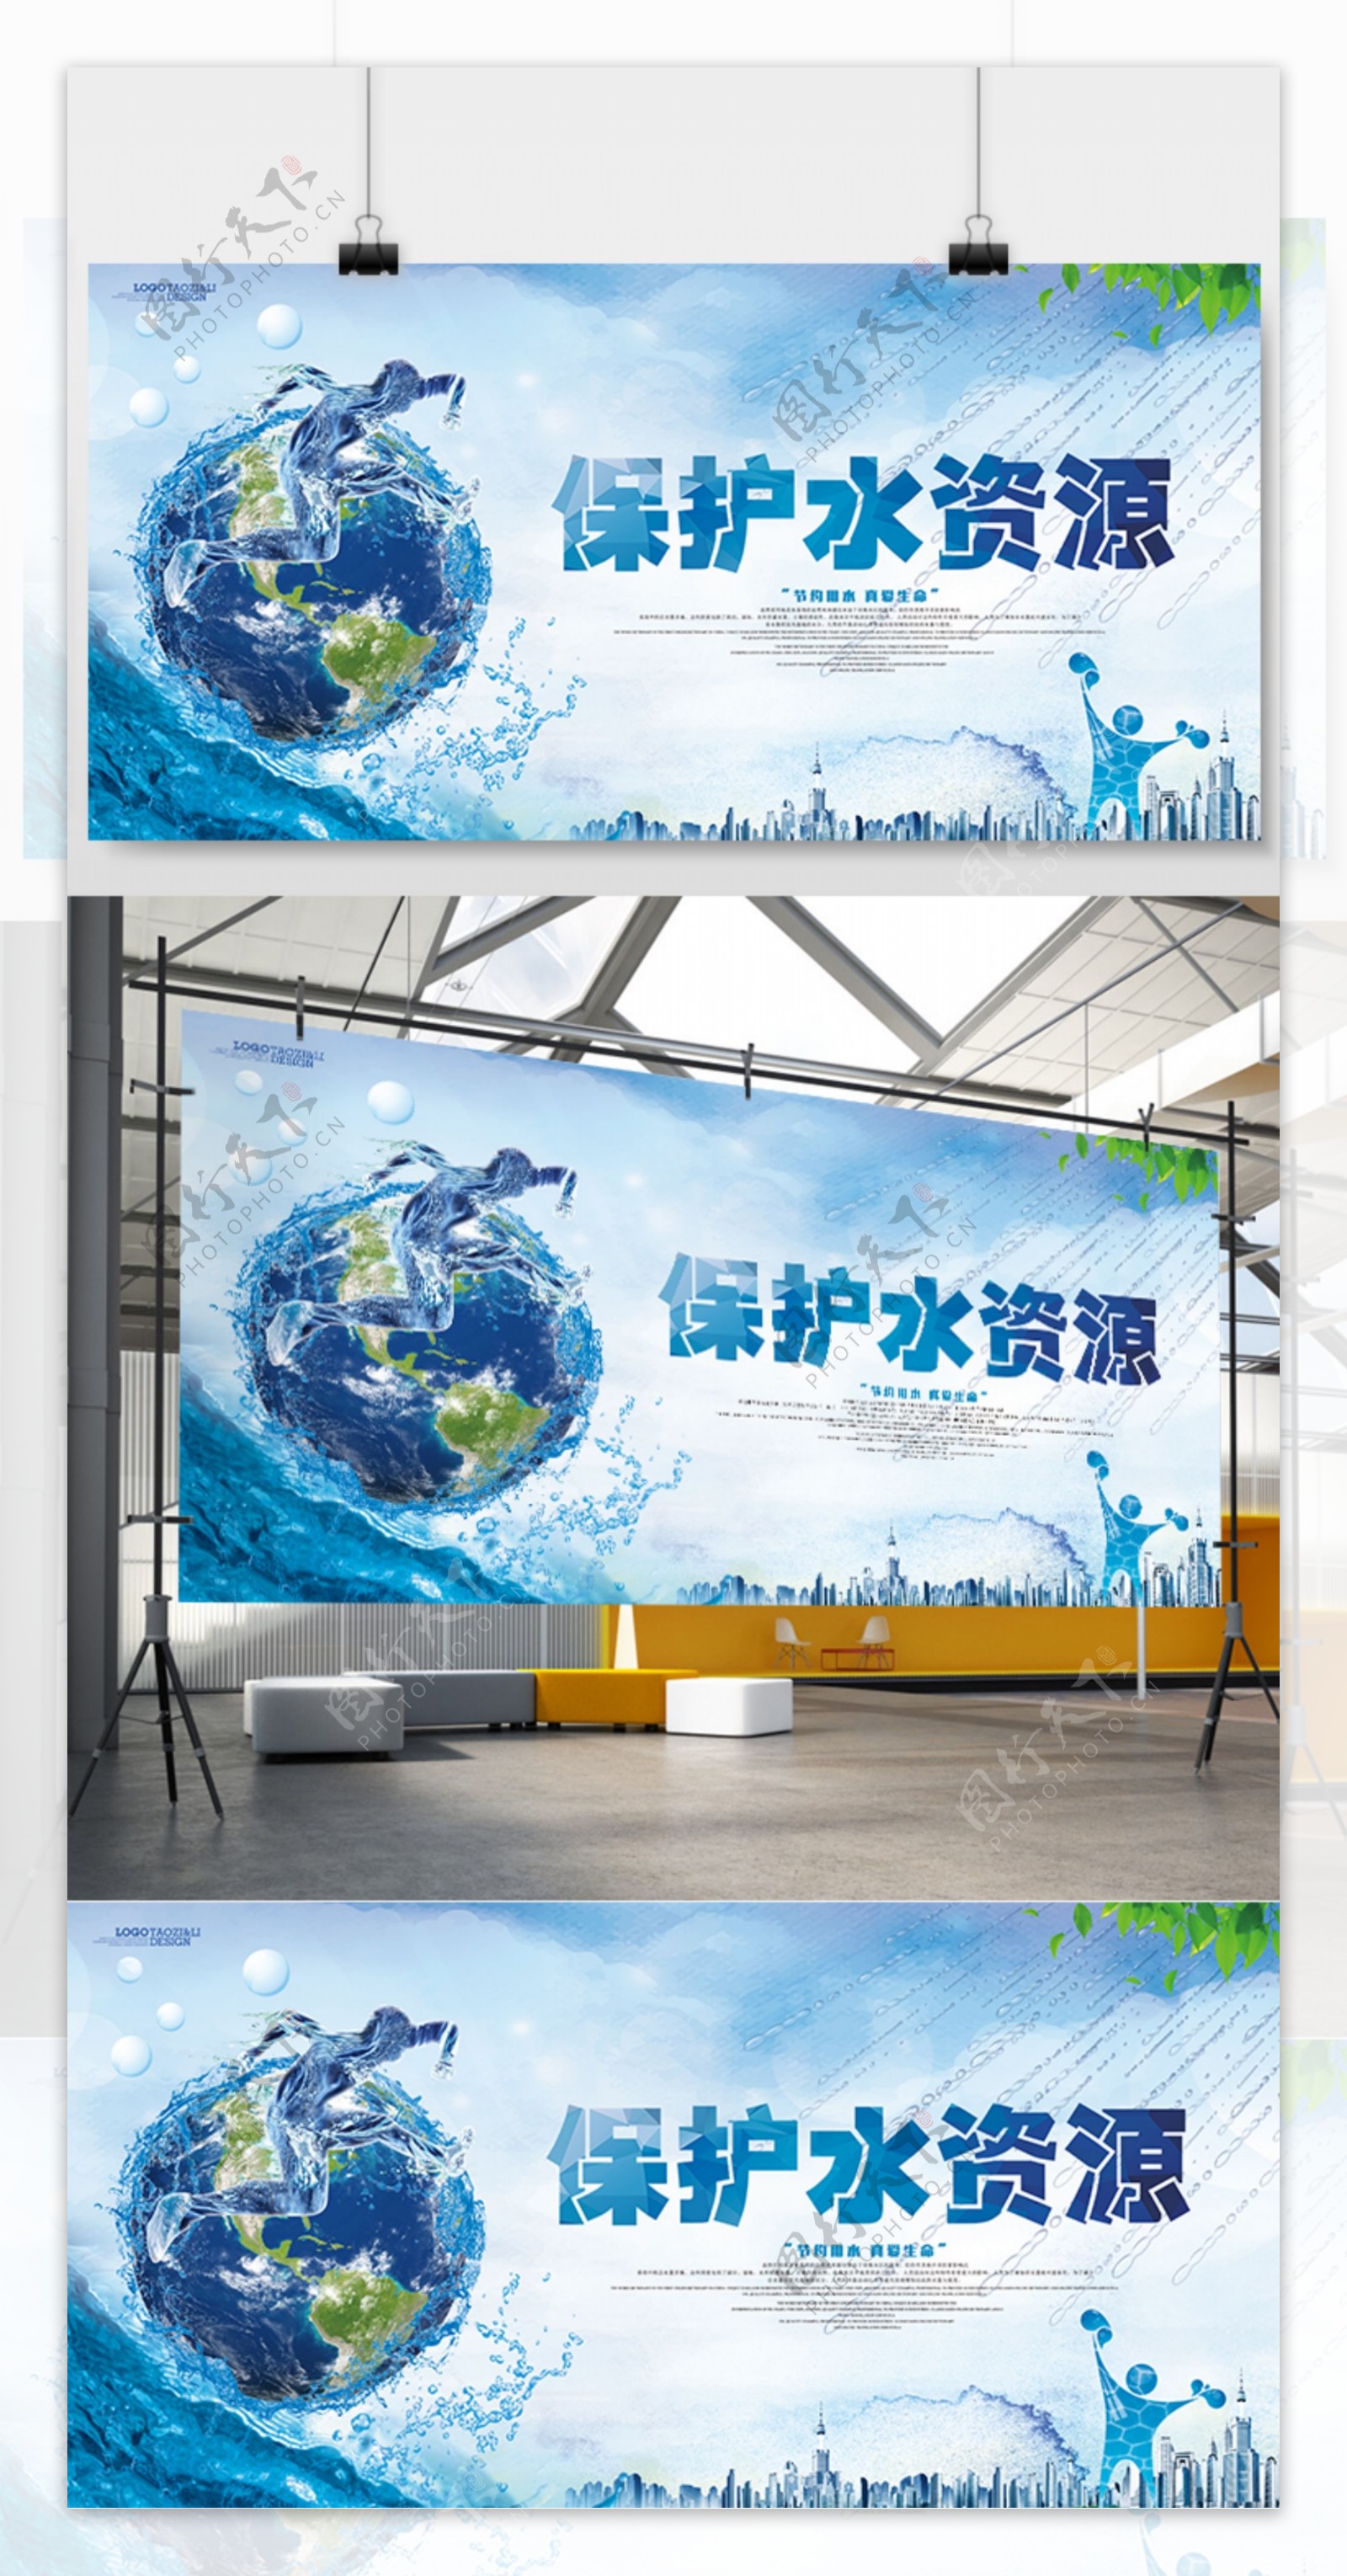 创意保护水资源公益展板设计